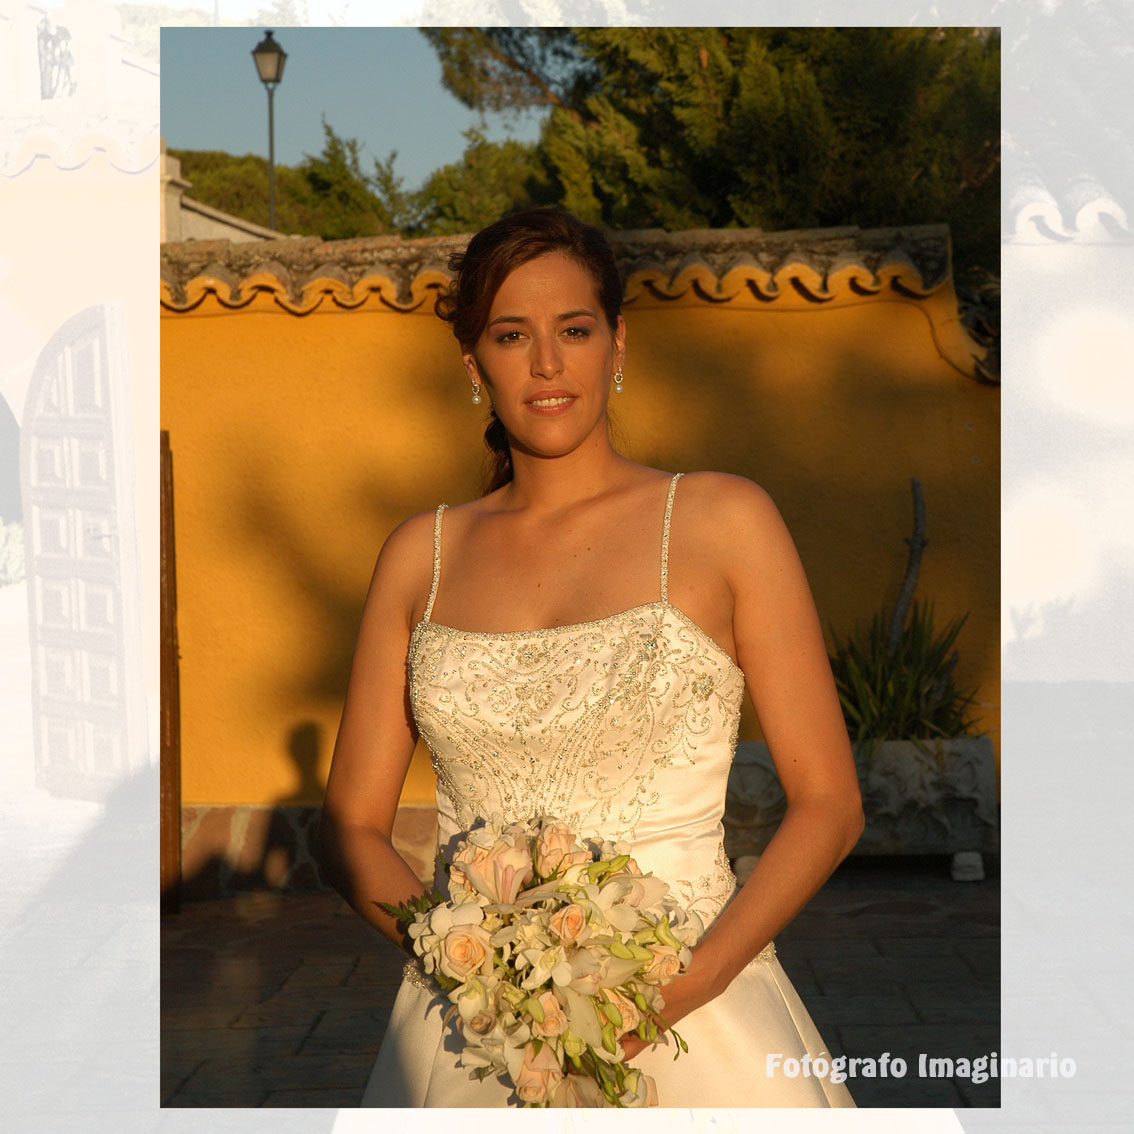 Luis Santamaría - Valladolid - Fotografia de bodas